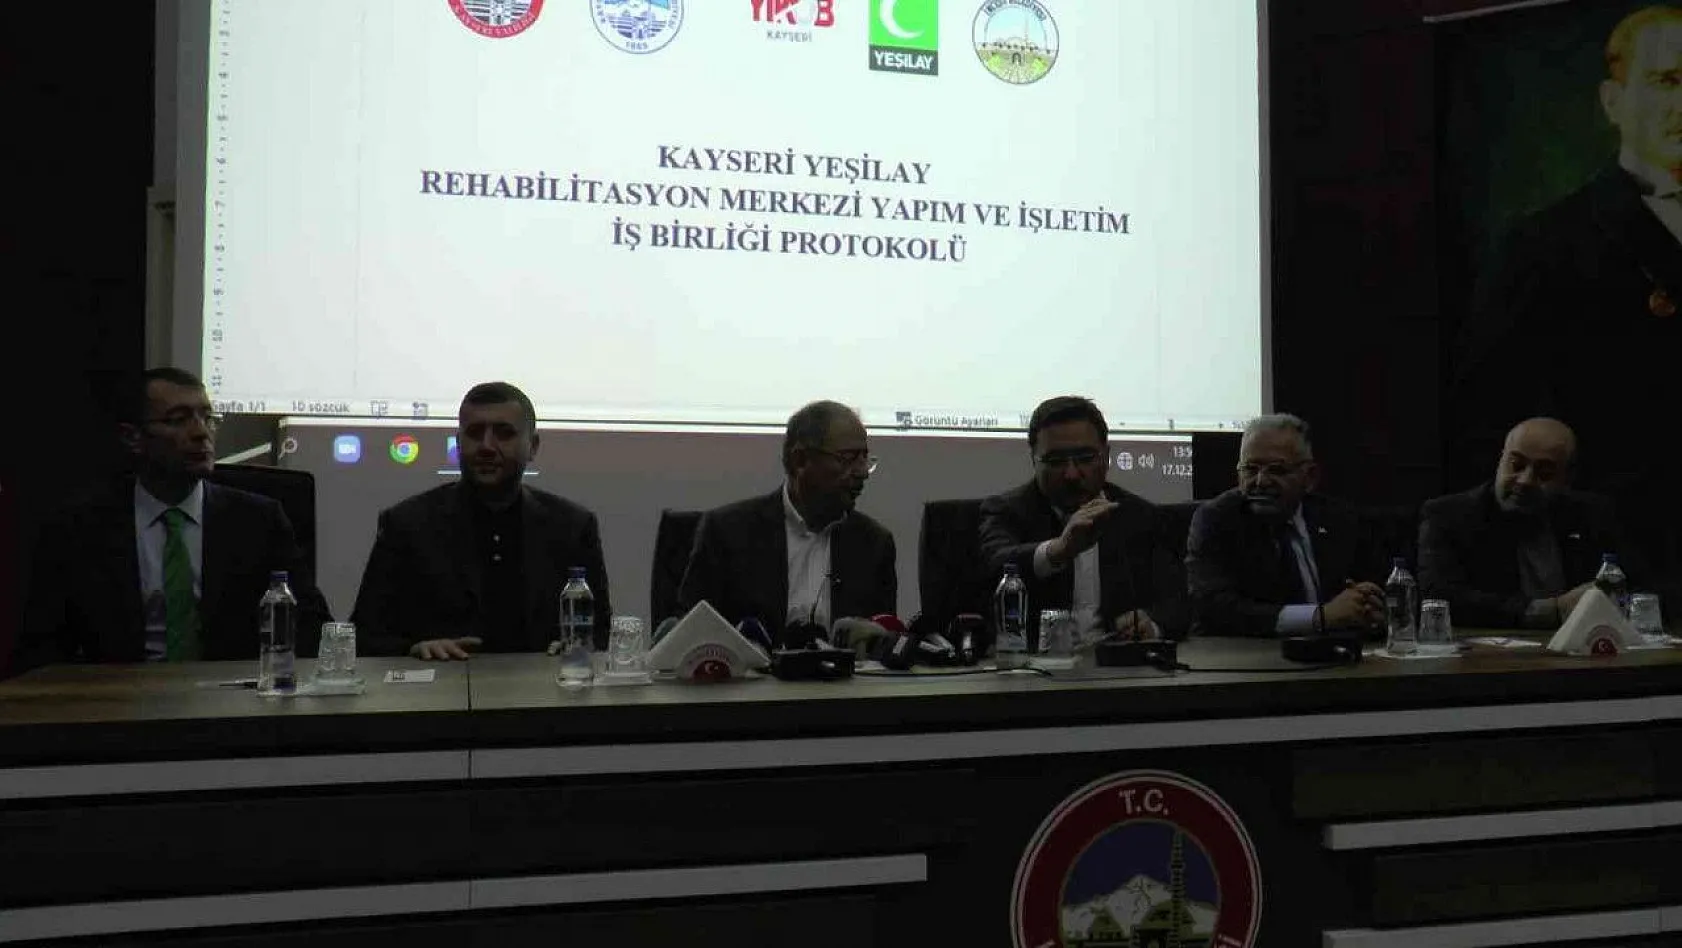 Kayseri'de Uyuşturucu Rehabilitasyon Merkezi kuruluyor